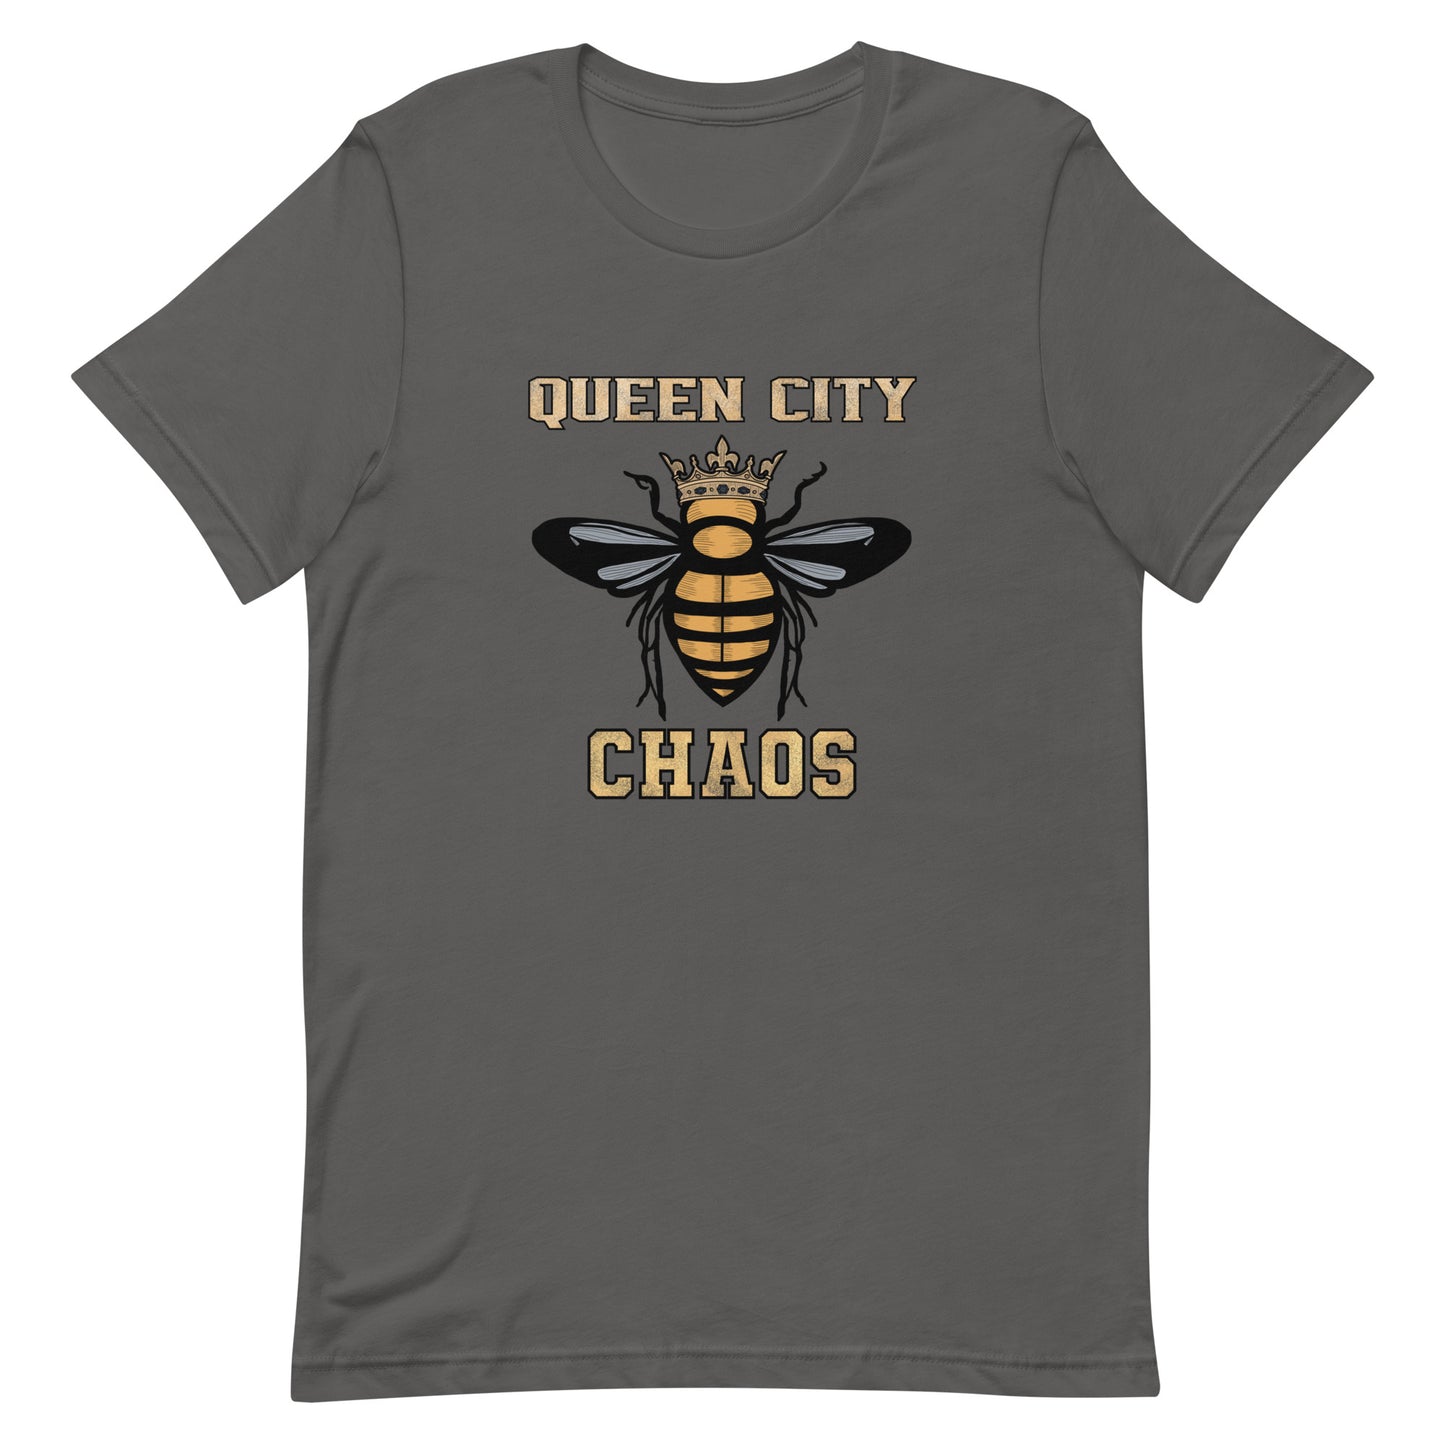 Queen City Chaos t-shirt